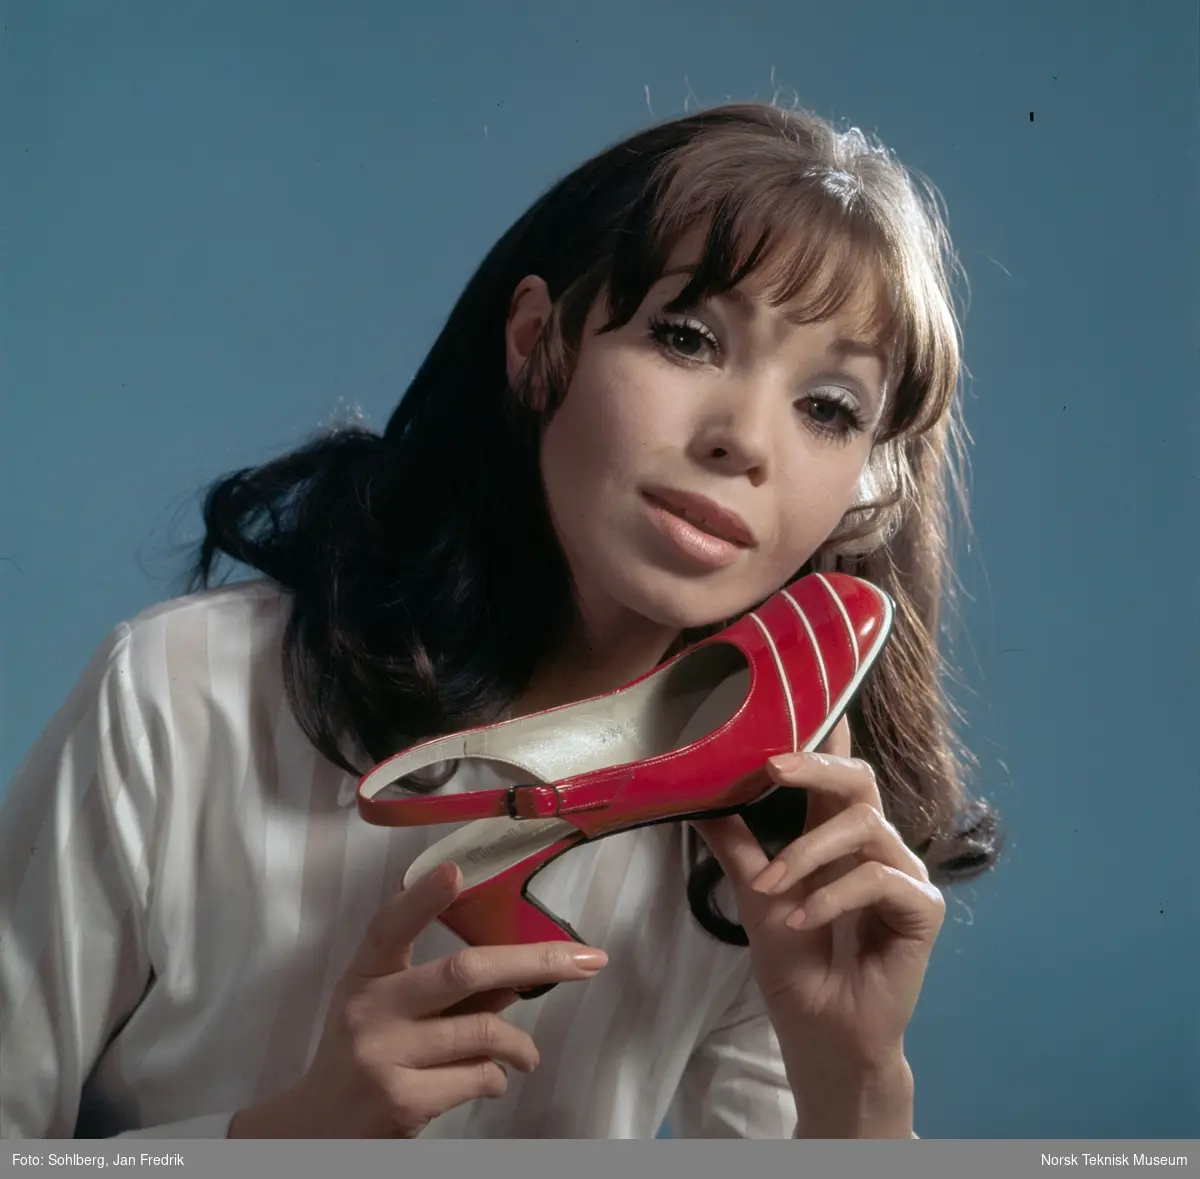 Tidlig norsk reklame- / motefoto. En kvinnelig modell holder en rød sko med hvite striper opp mot kinnet. Hun virker fornøyd med tidens skomote.